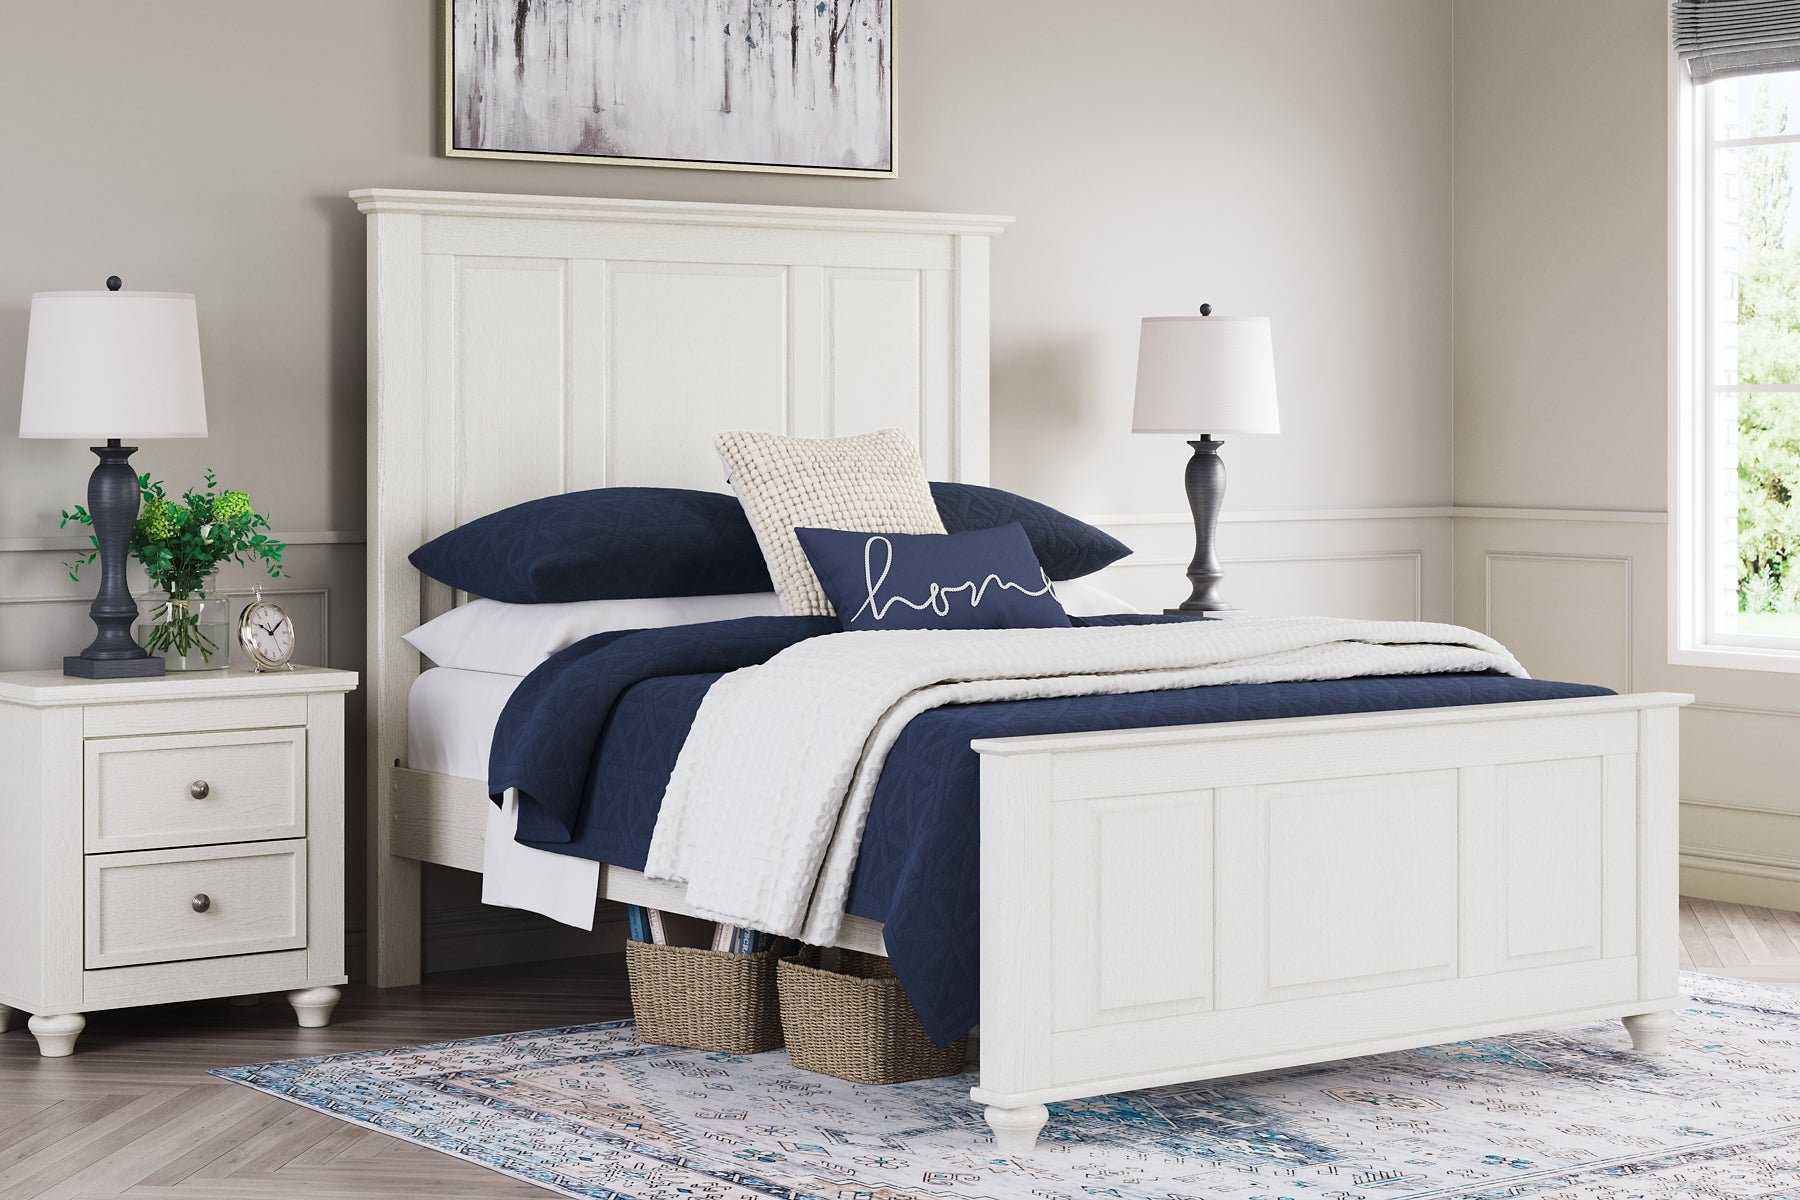 Grantoni Queen Panel Bed with Dresser